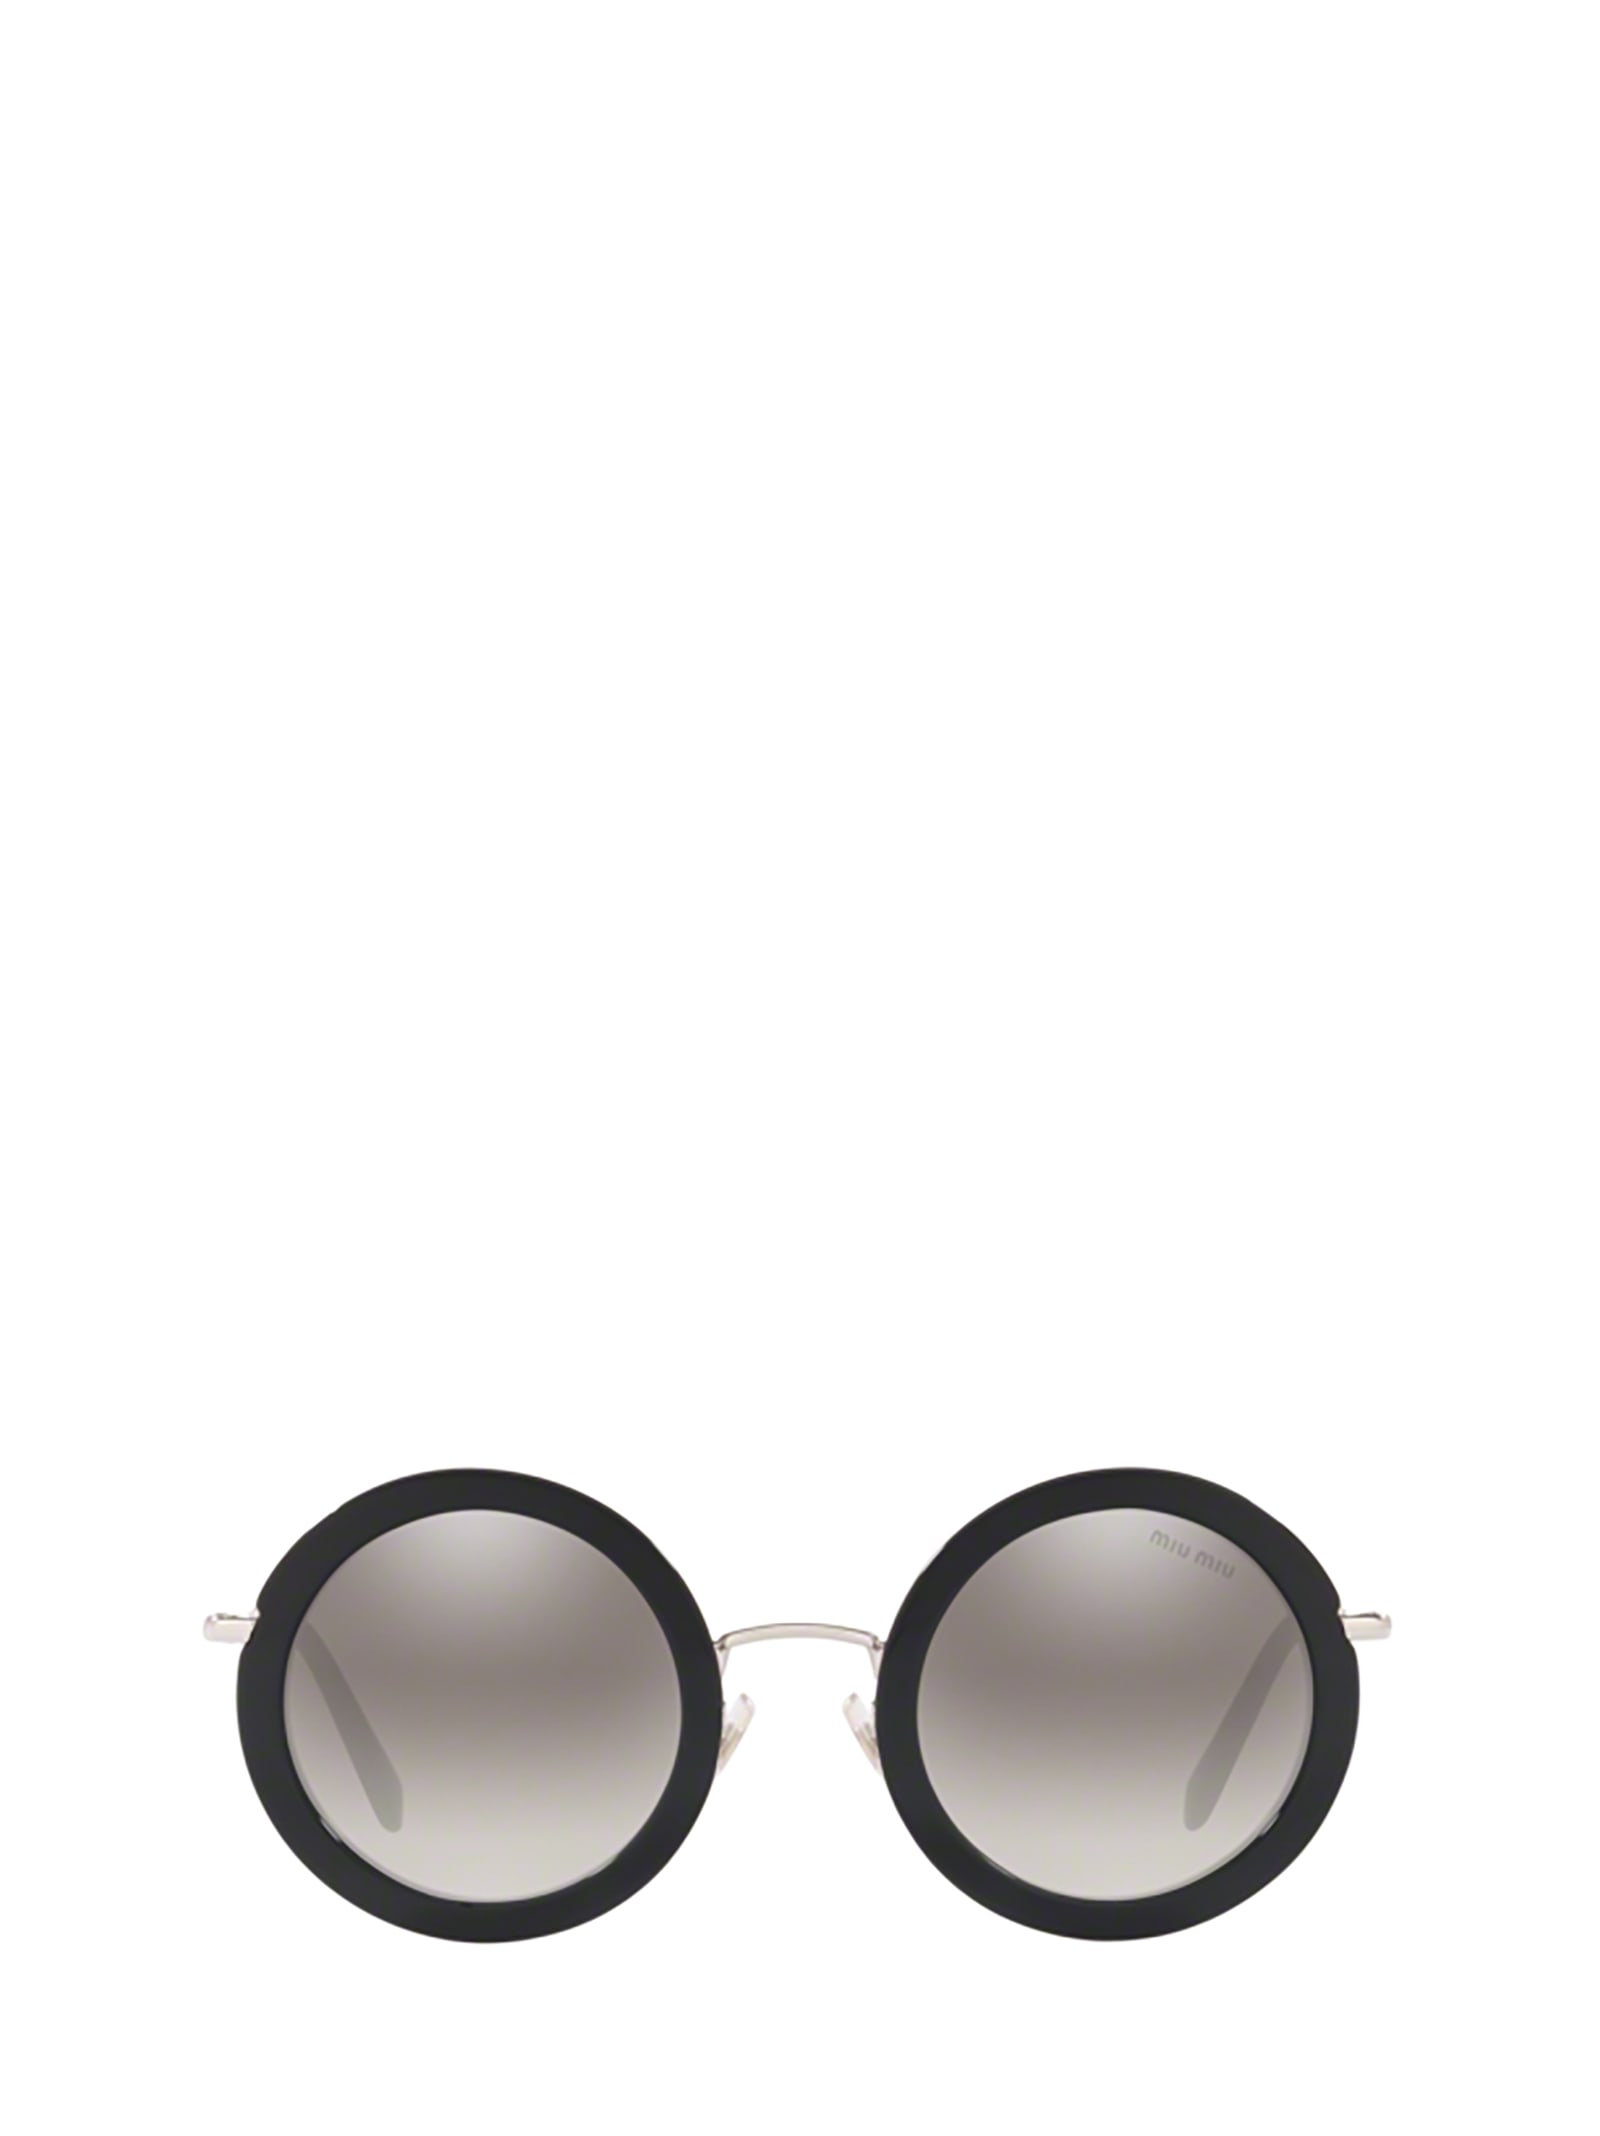 Miu Miu Eyewear Miu Miu Mu 59us Black Sunglasses